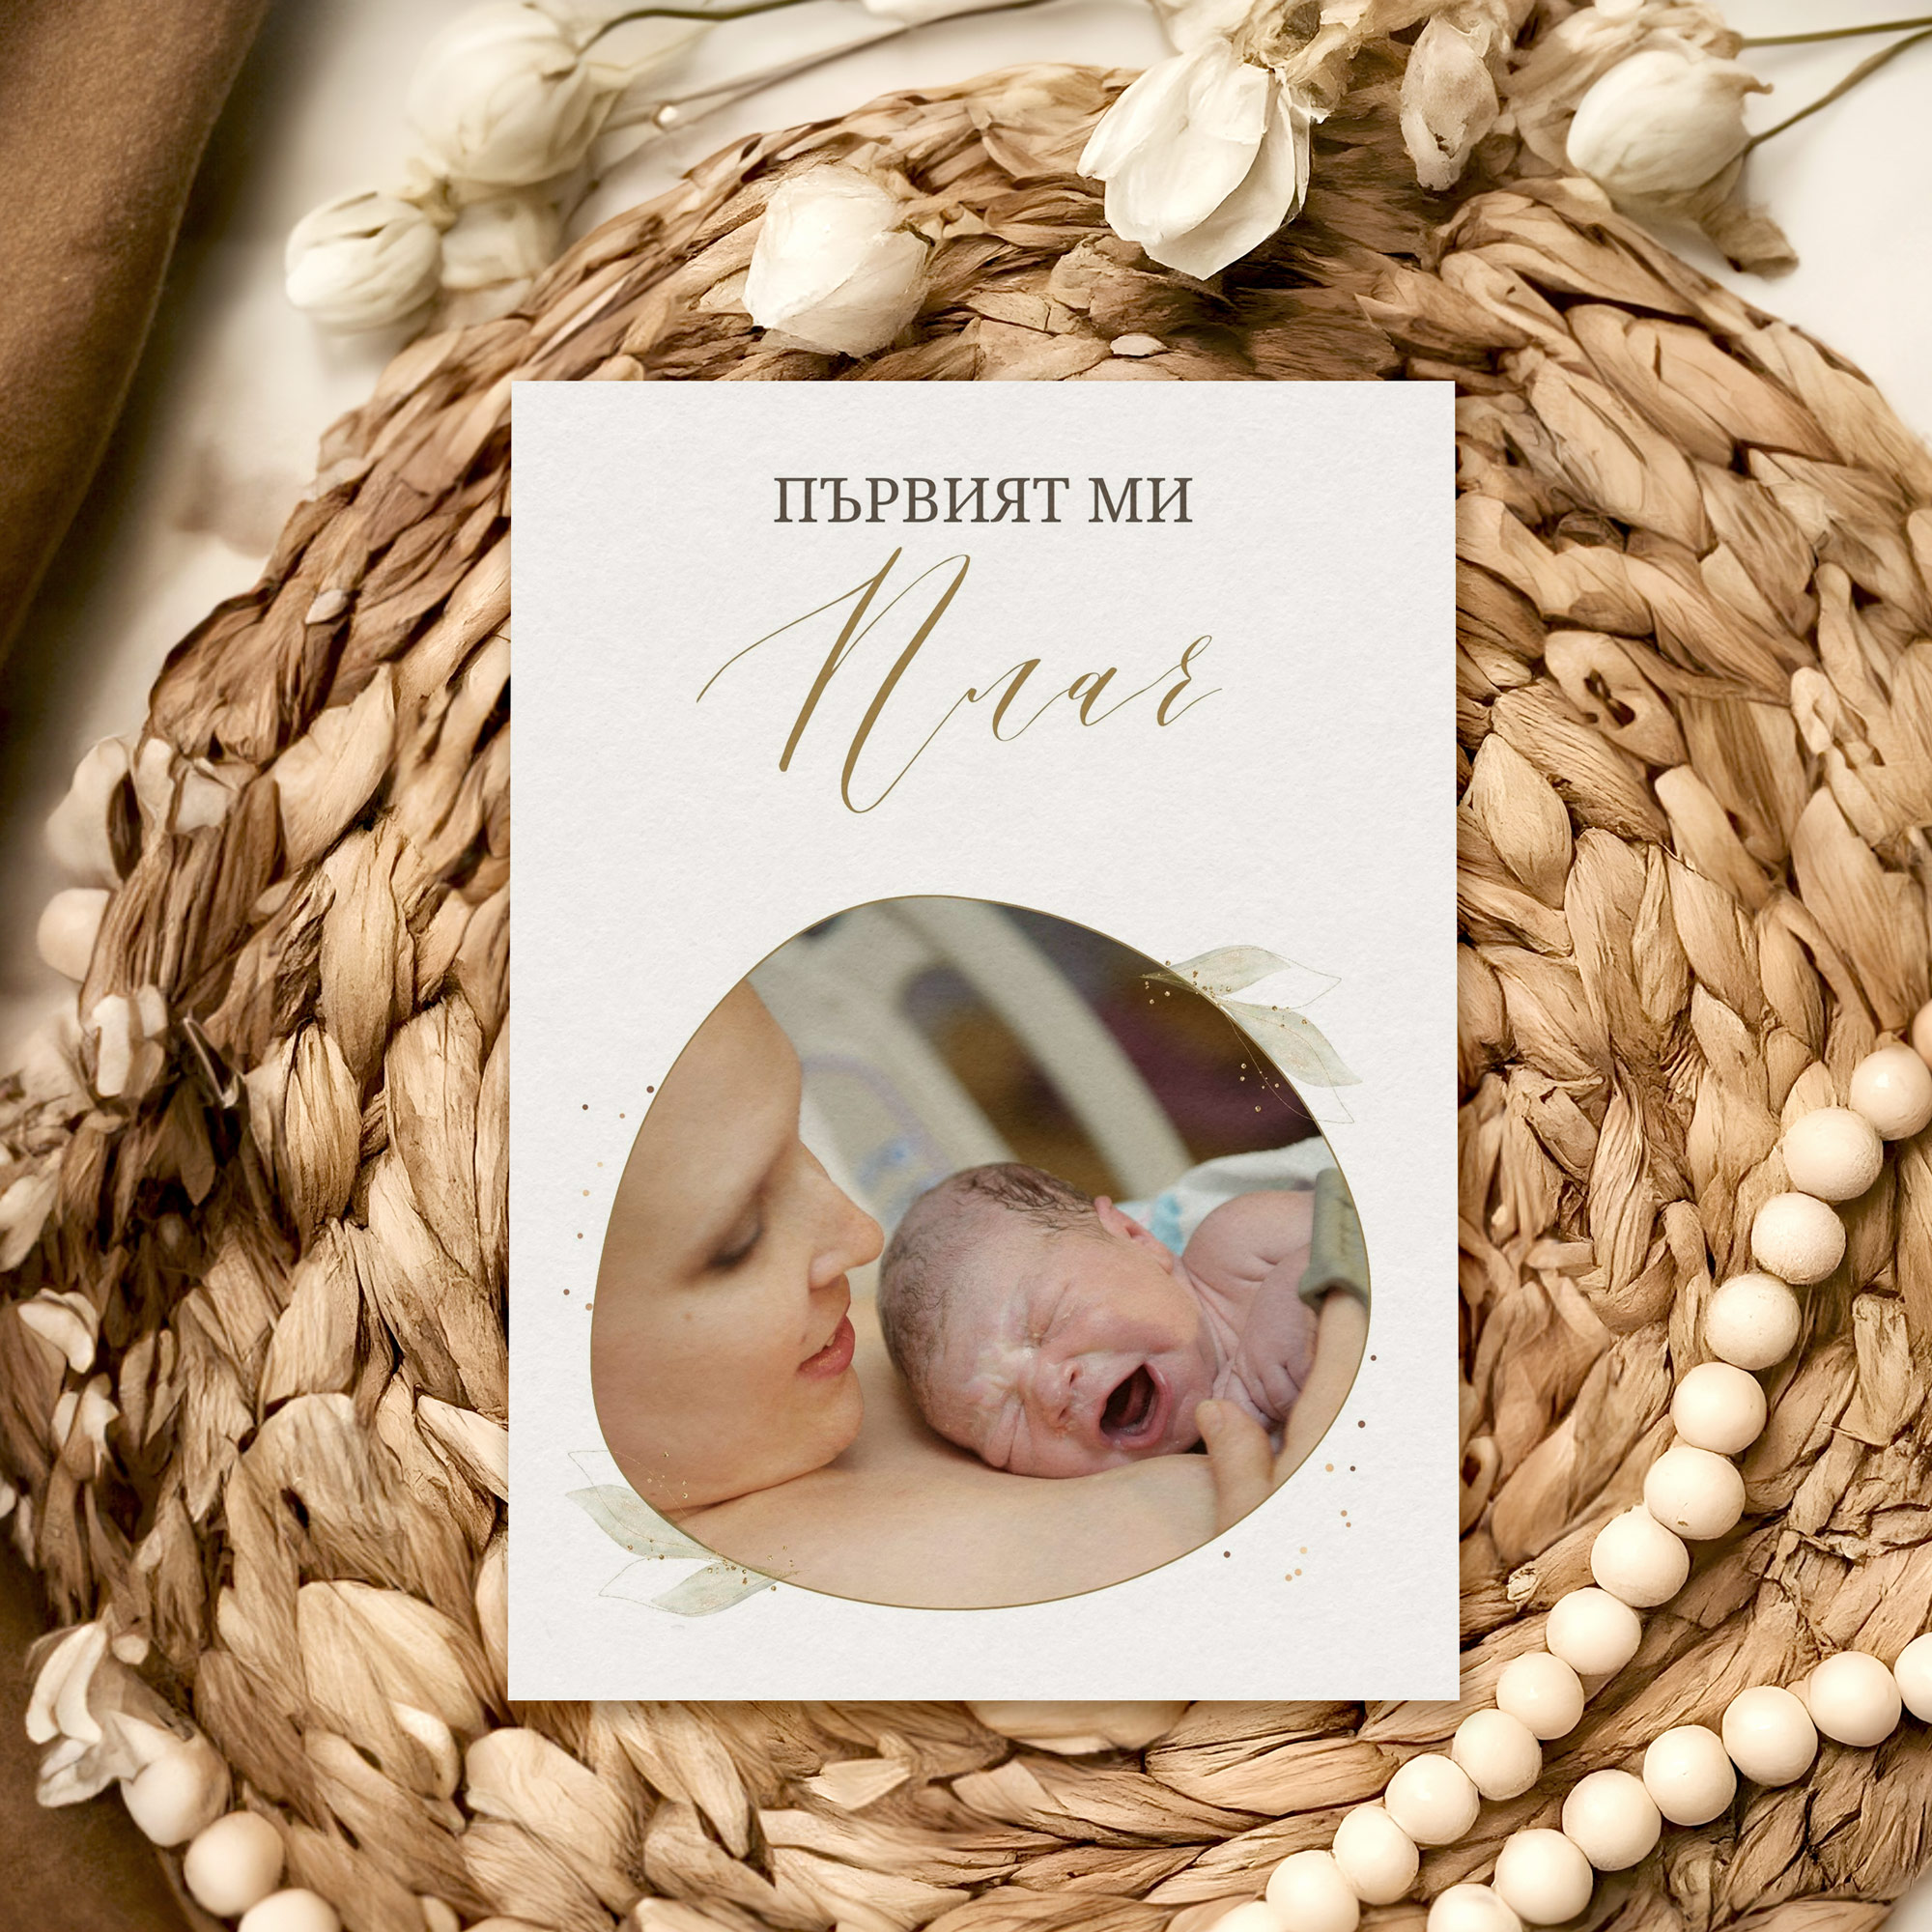 Персонализирани бебешки карти Luxury – Подарък за новородено бебе – Слънчо Обичкам те Магазин – Магазина на слънчо